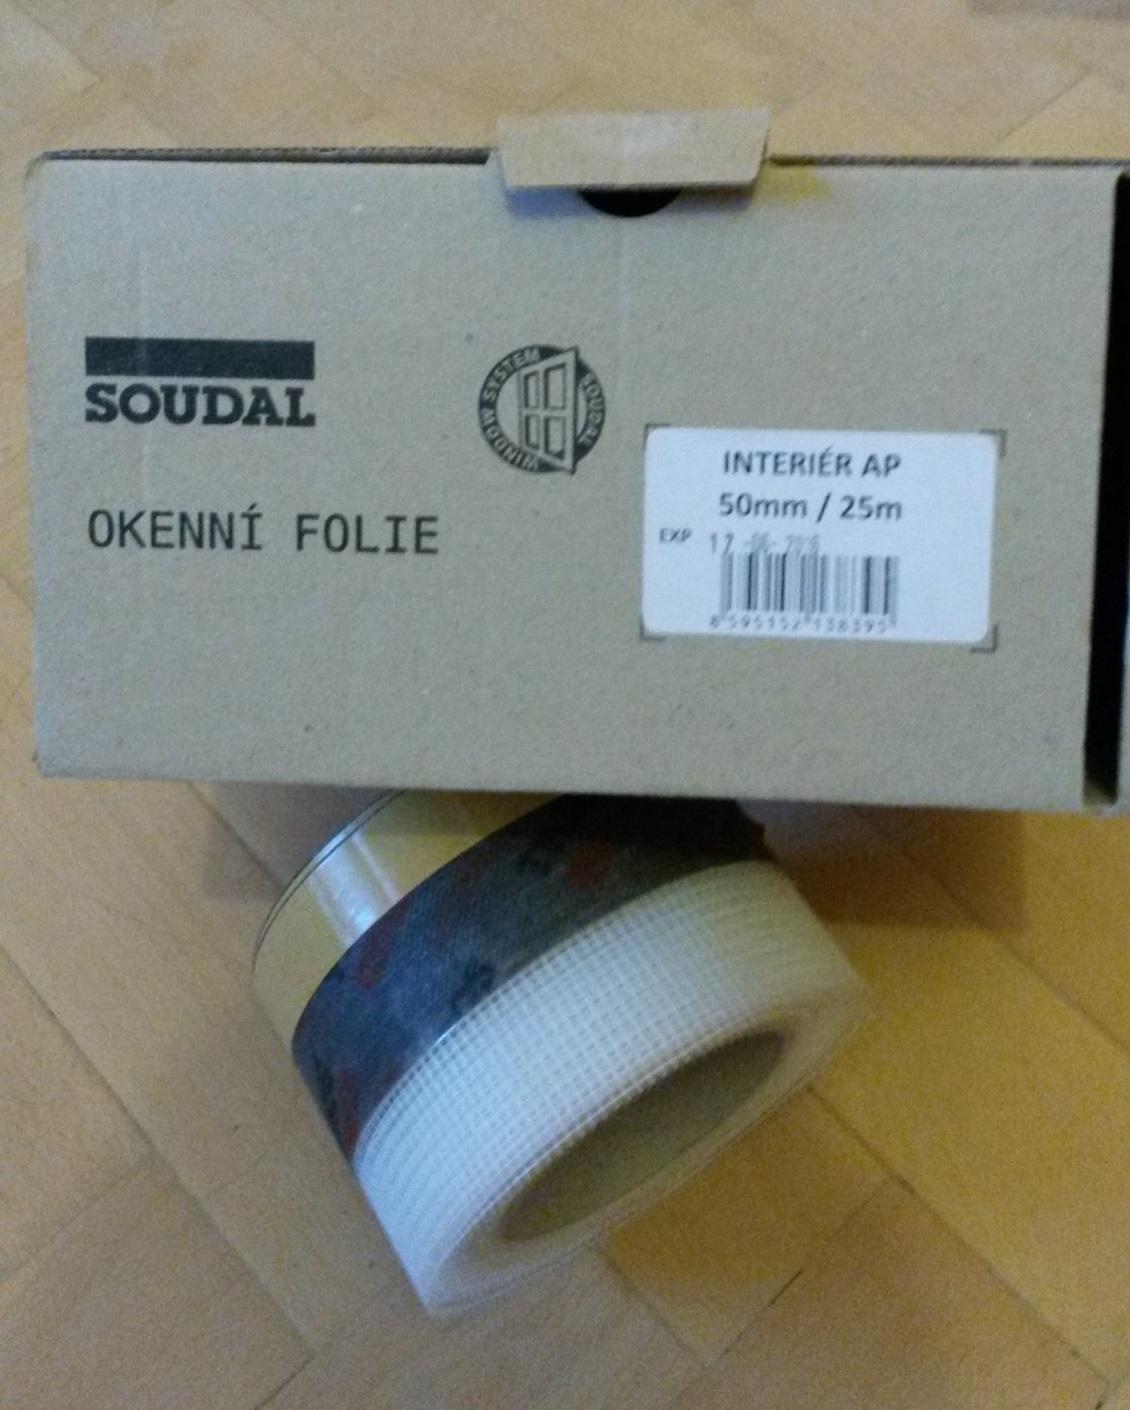 Okenna folia / paska, Soudal INT-AP 50 mm, 9.5m - Obrázok č. 1